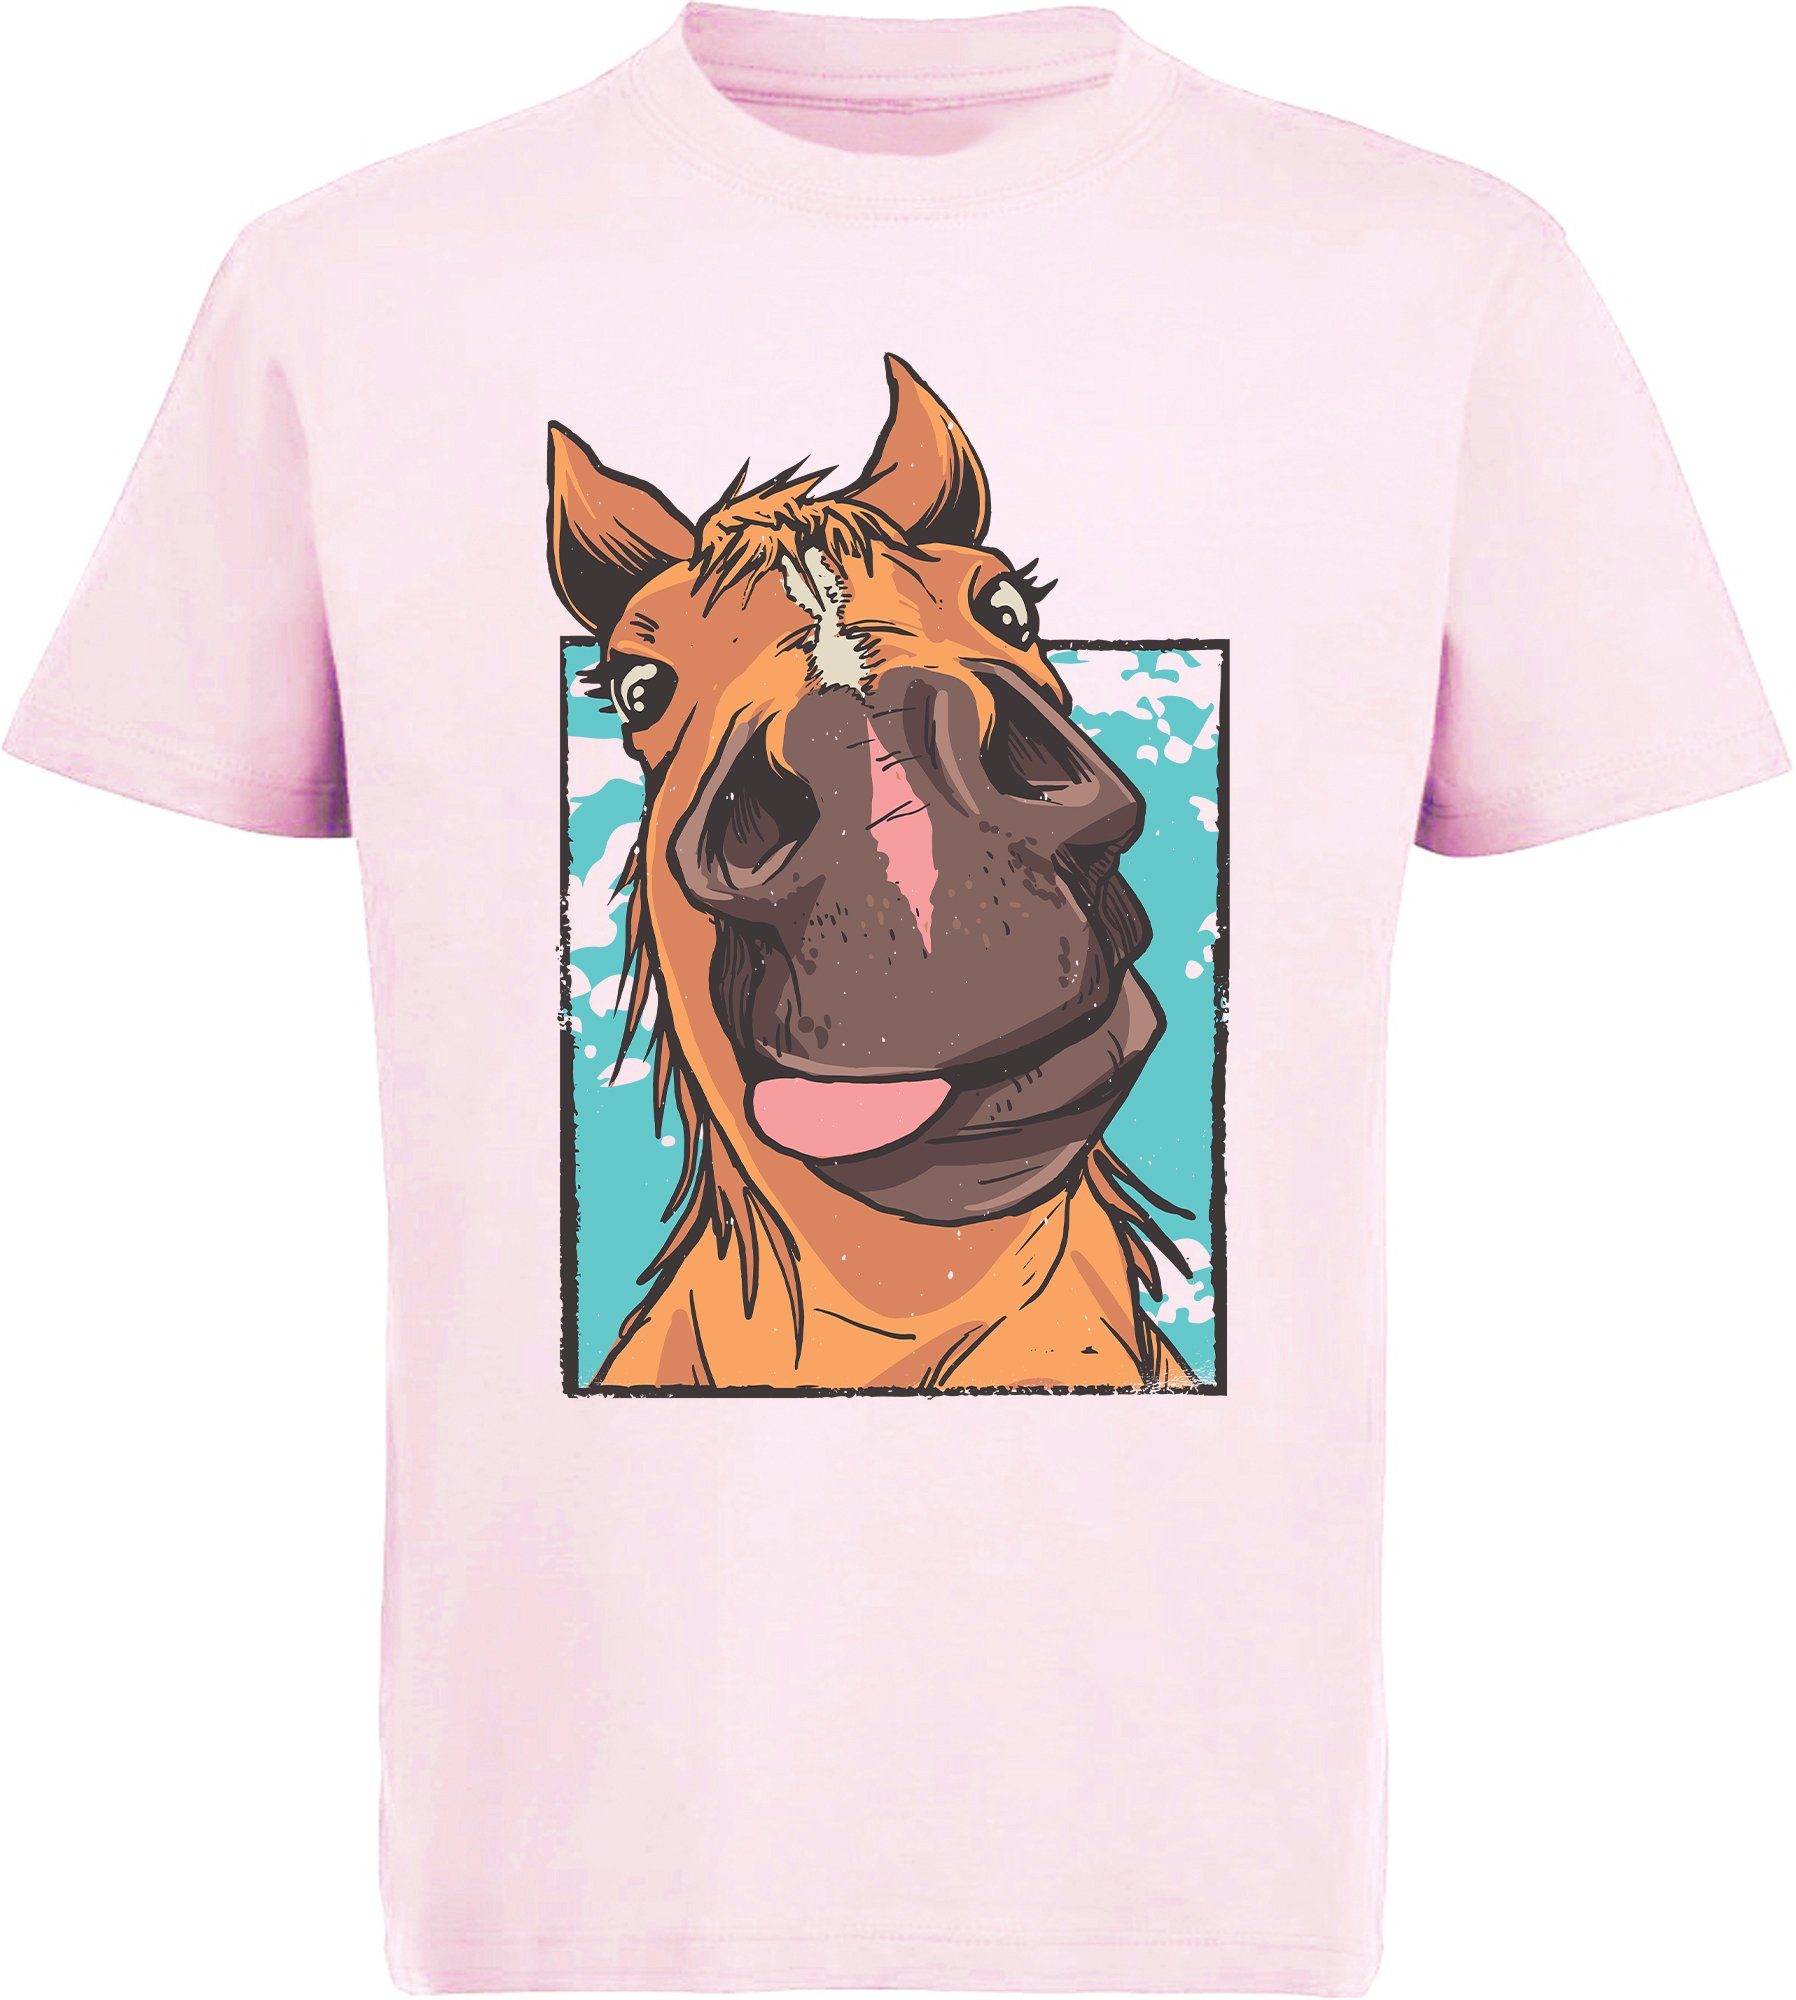 MyDesign24 Print-Shirt bedrucktes Kinder T-Shirt lustiger Pferdekopf mit Zunge Baumwollshirt mit Aufdruck, i153 rosa